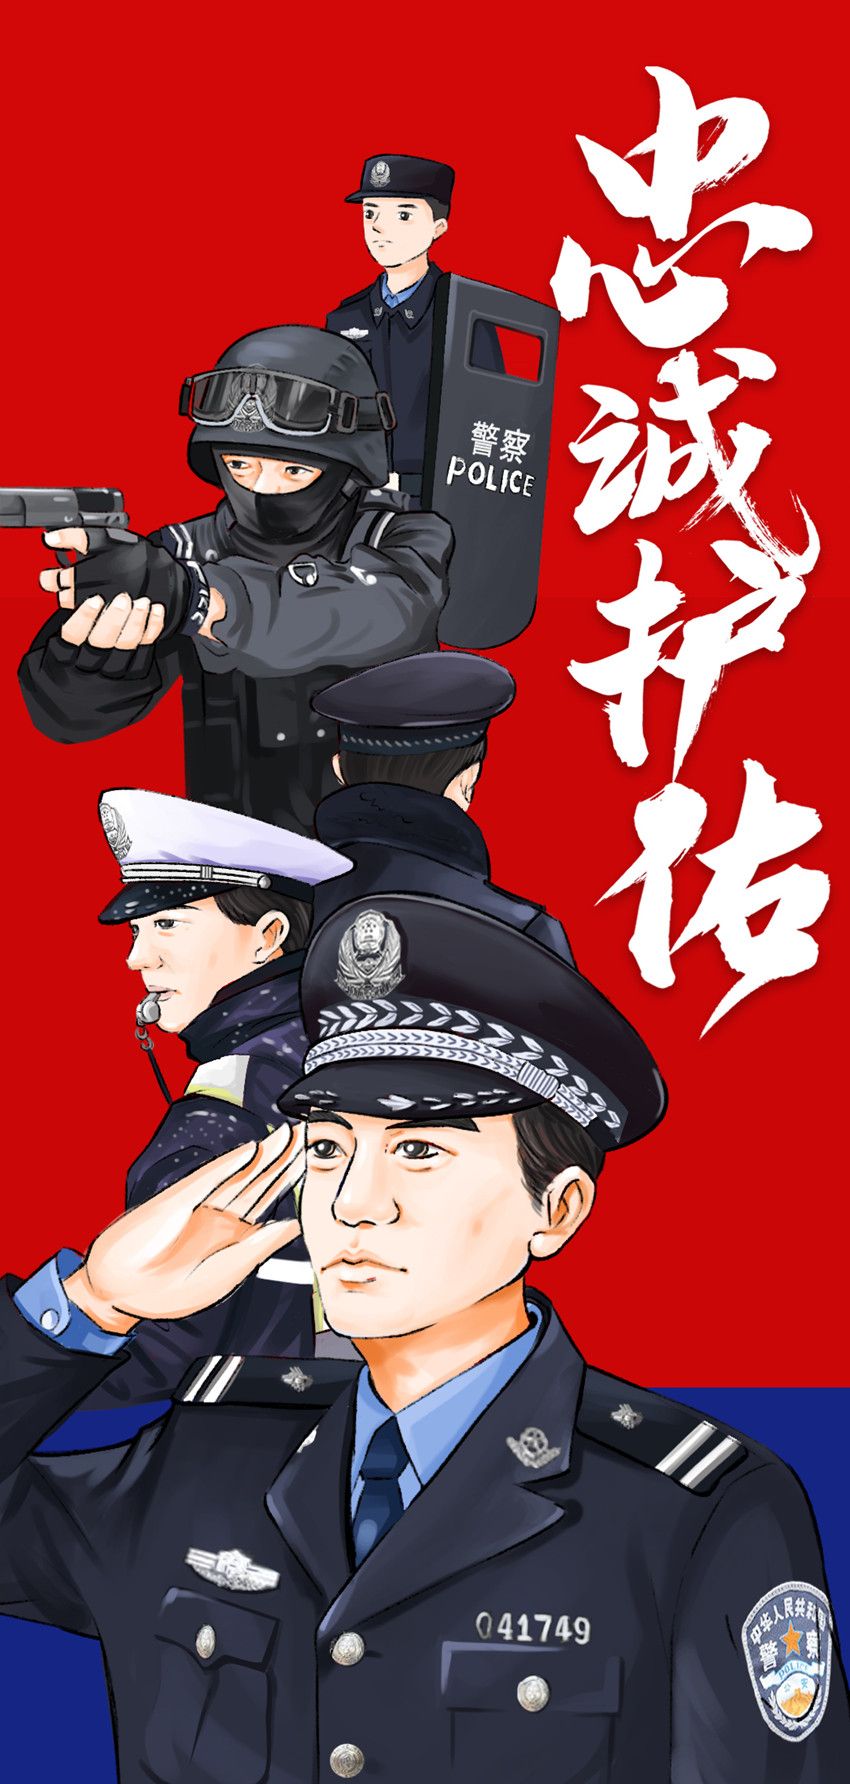 国务院批复,自2021年起,将每年1月10日设立为中国人民警察节